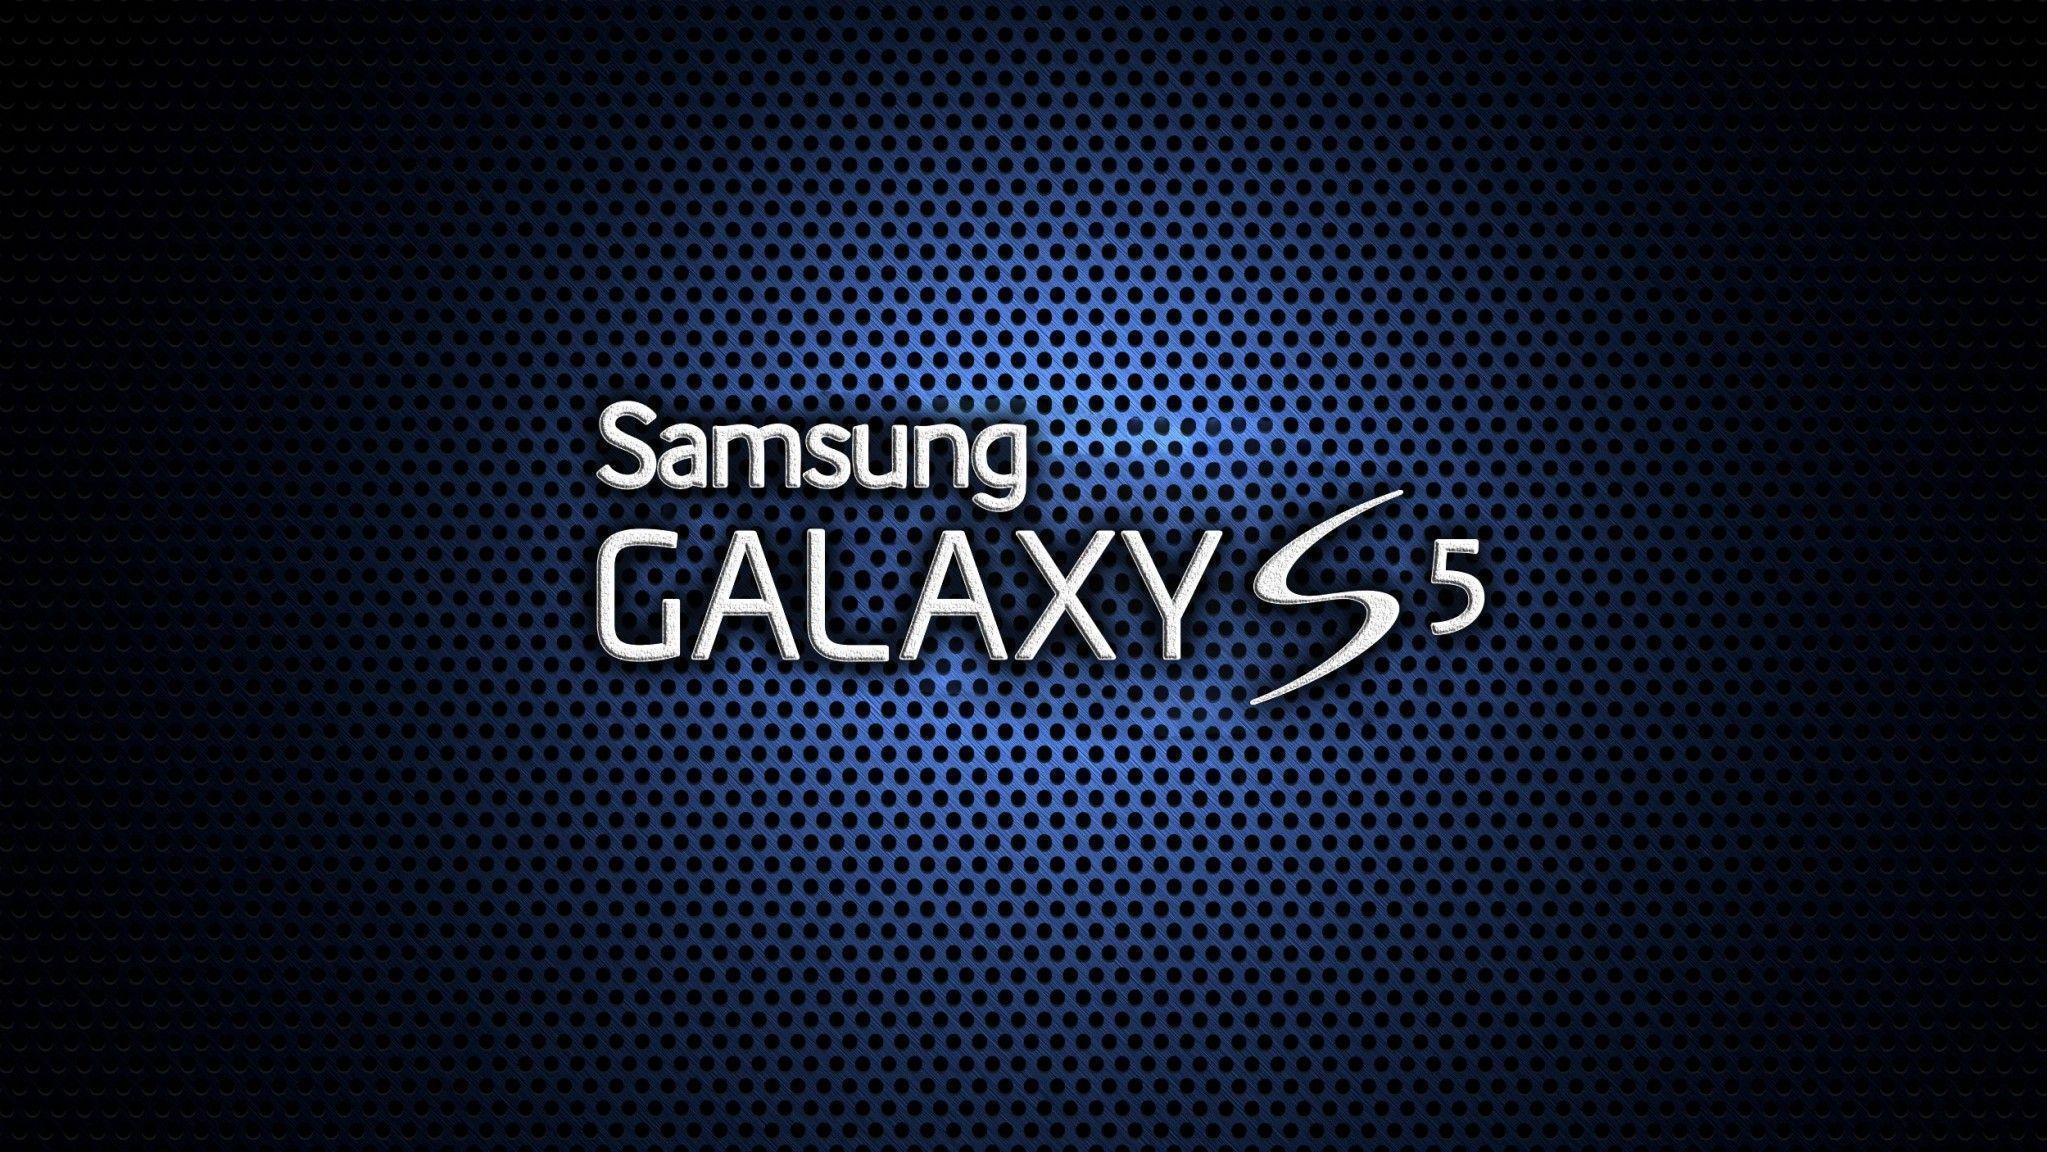 Bạn đang tìm kiếm hình nền với logo Samsung tuyệt đẹp để làm nền cho điện thoại của mình? Hãy khám phá bộ sưu tập ảnh nền độc đáo với logo Samsung tuyệt đẹp ngay bây giờ!